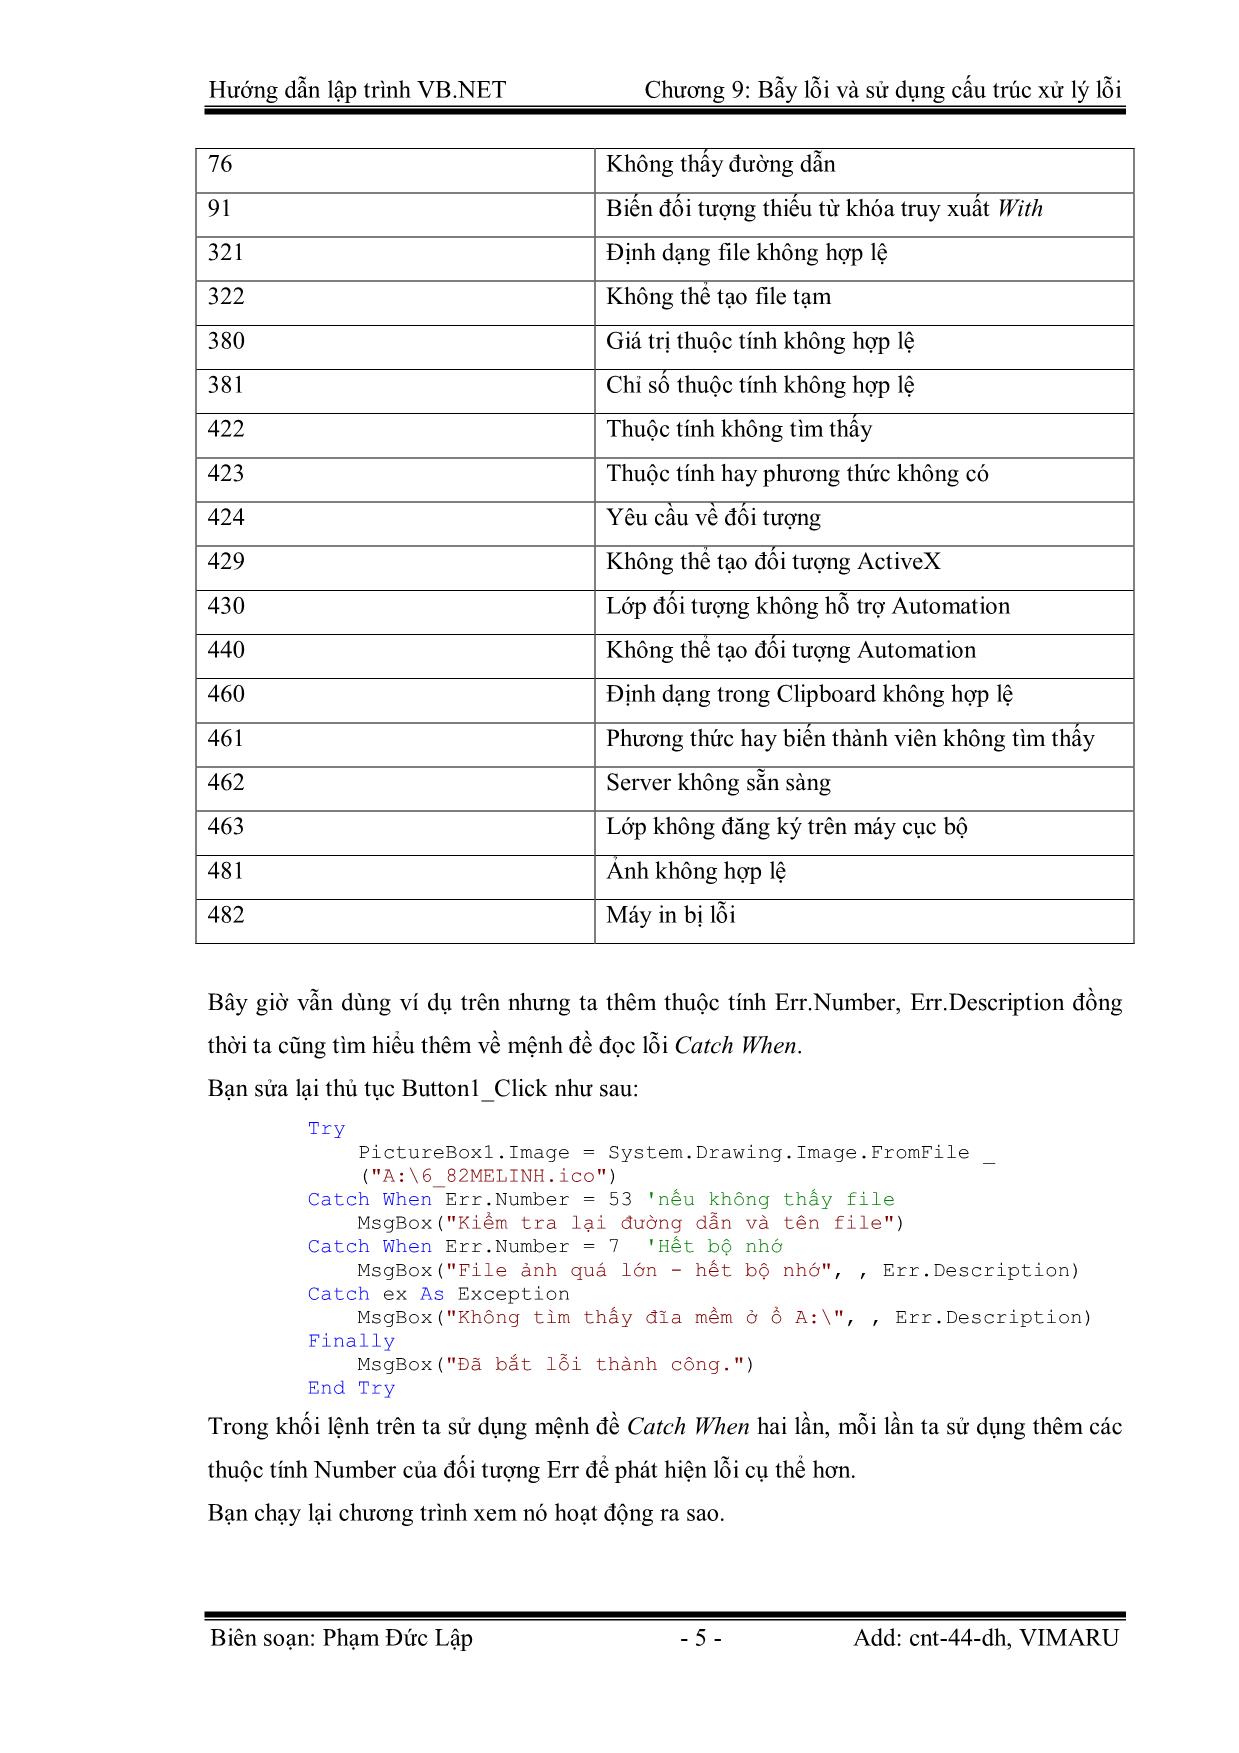 Giáo trình Hướng dẫn lập trình VB.NET - Chương 9: Bẫy lỗi và sử dụng cấu trúc xử lý lỗi - Phạm Đức Lập trang 5